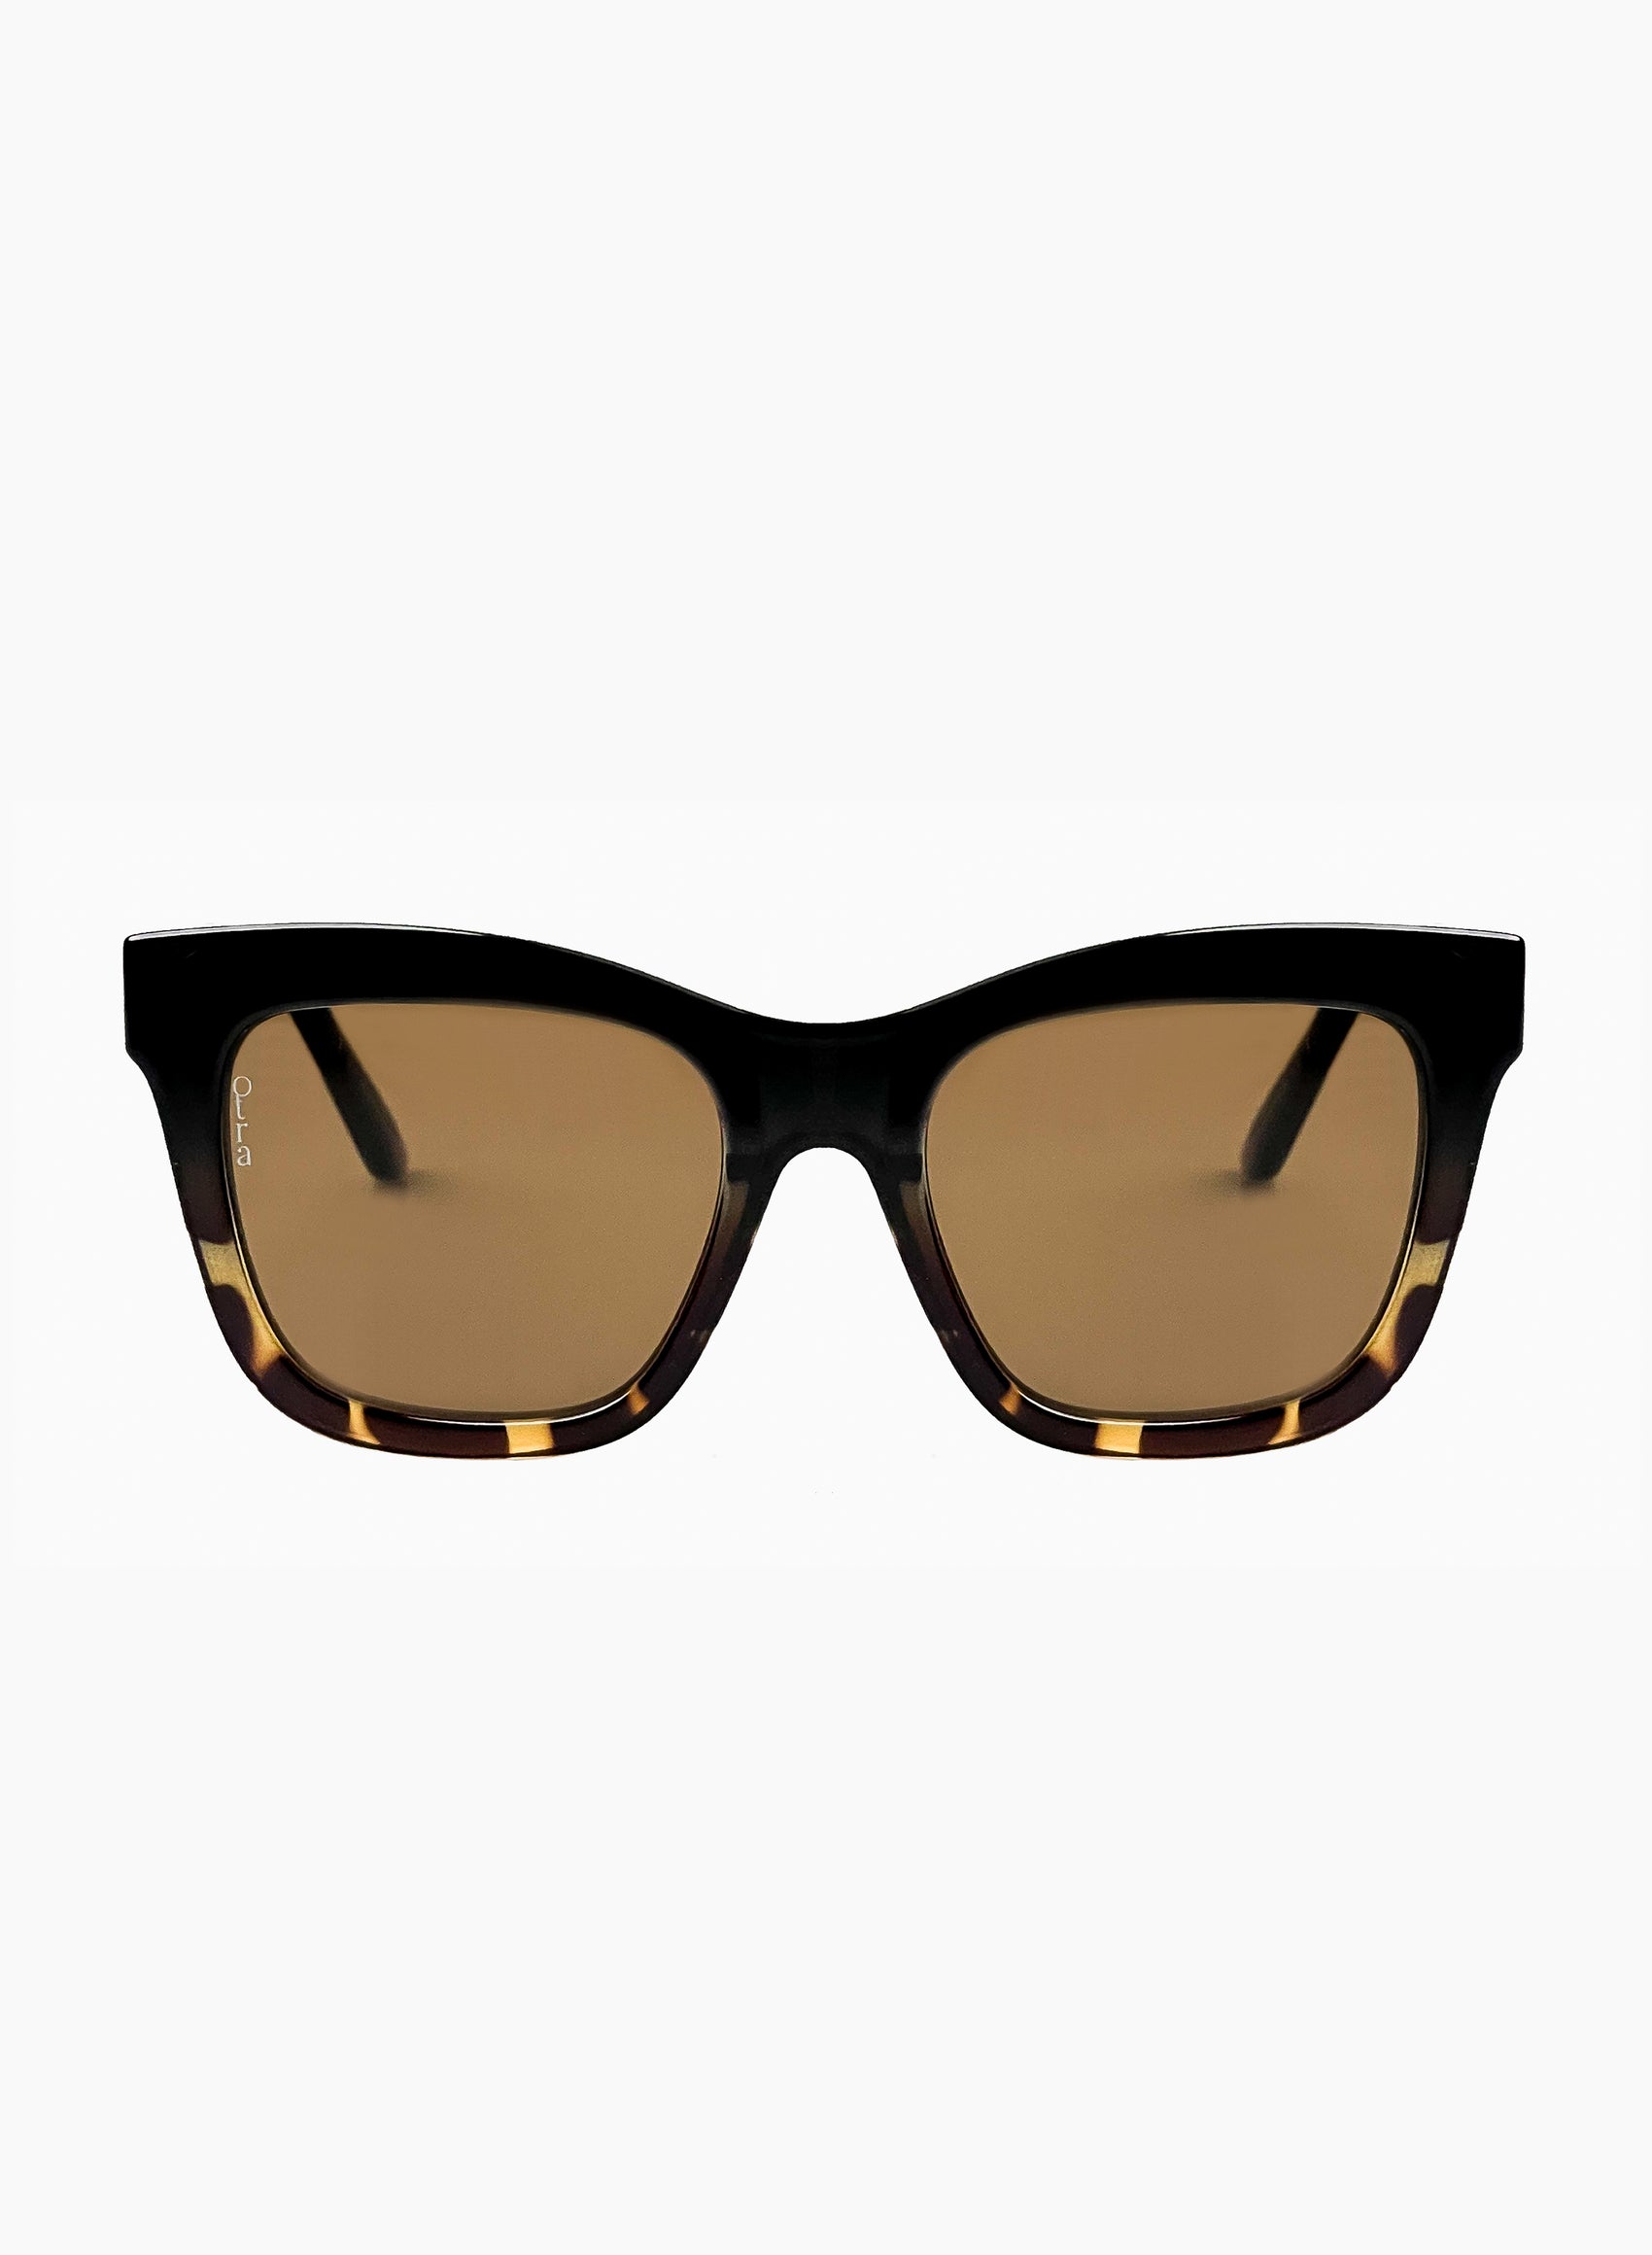 Irma cat eye sunglasses in brown tortoiseshell